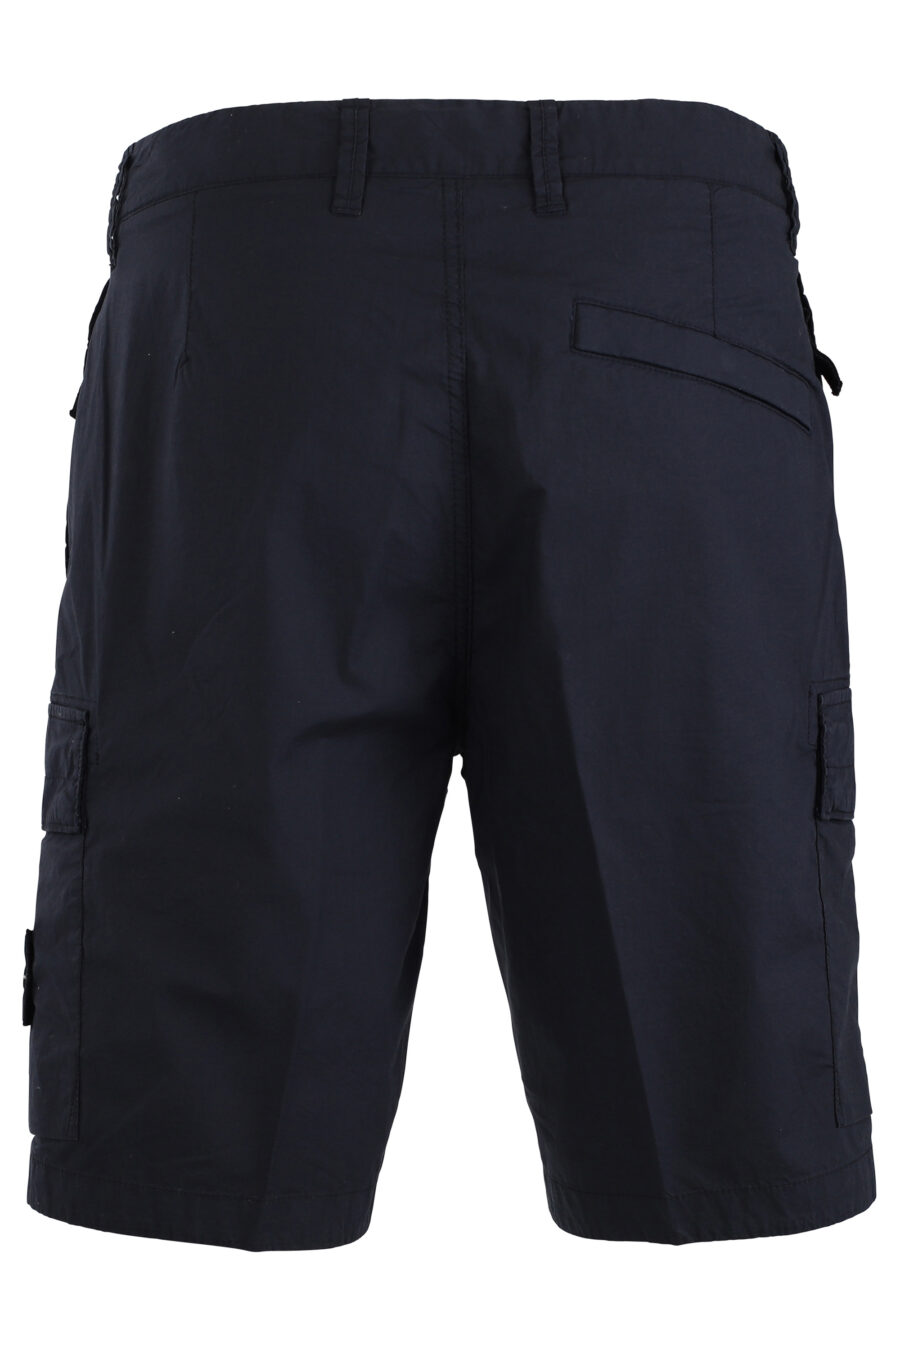 Pantalón corto midi azul estilo cargo - IMG 1698